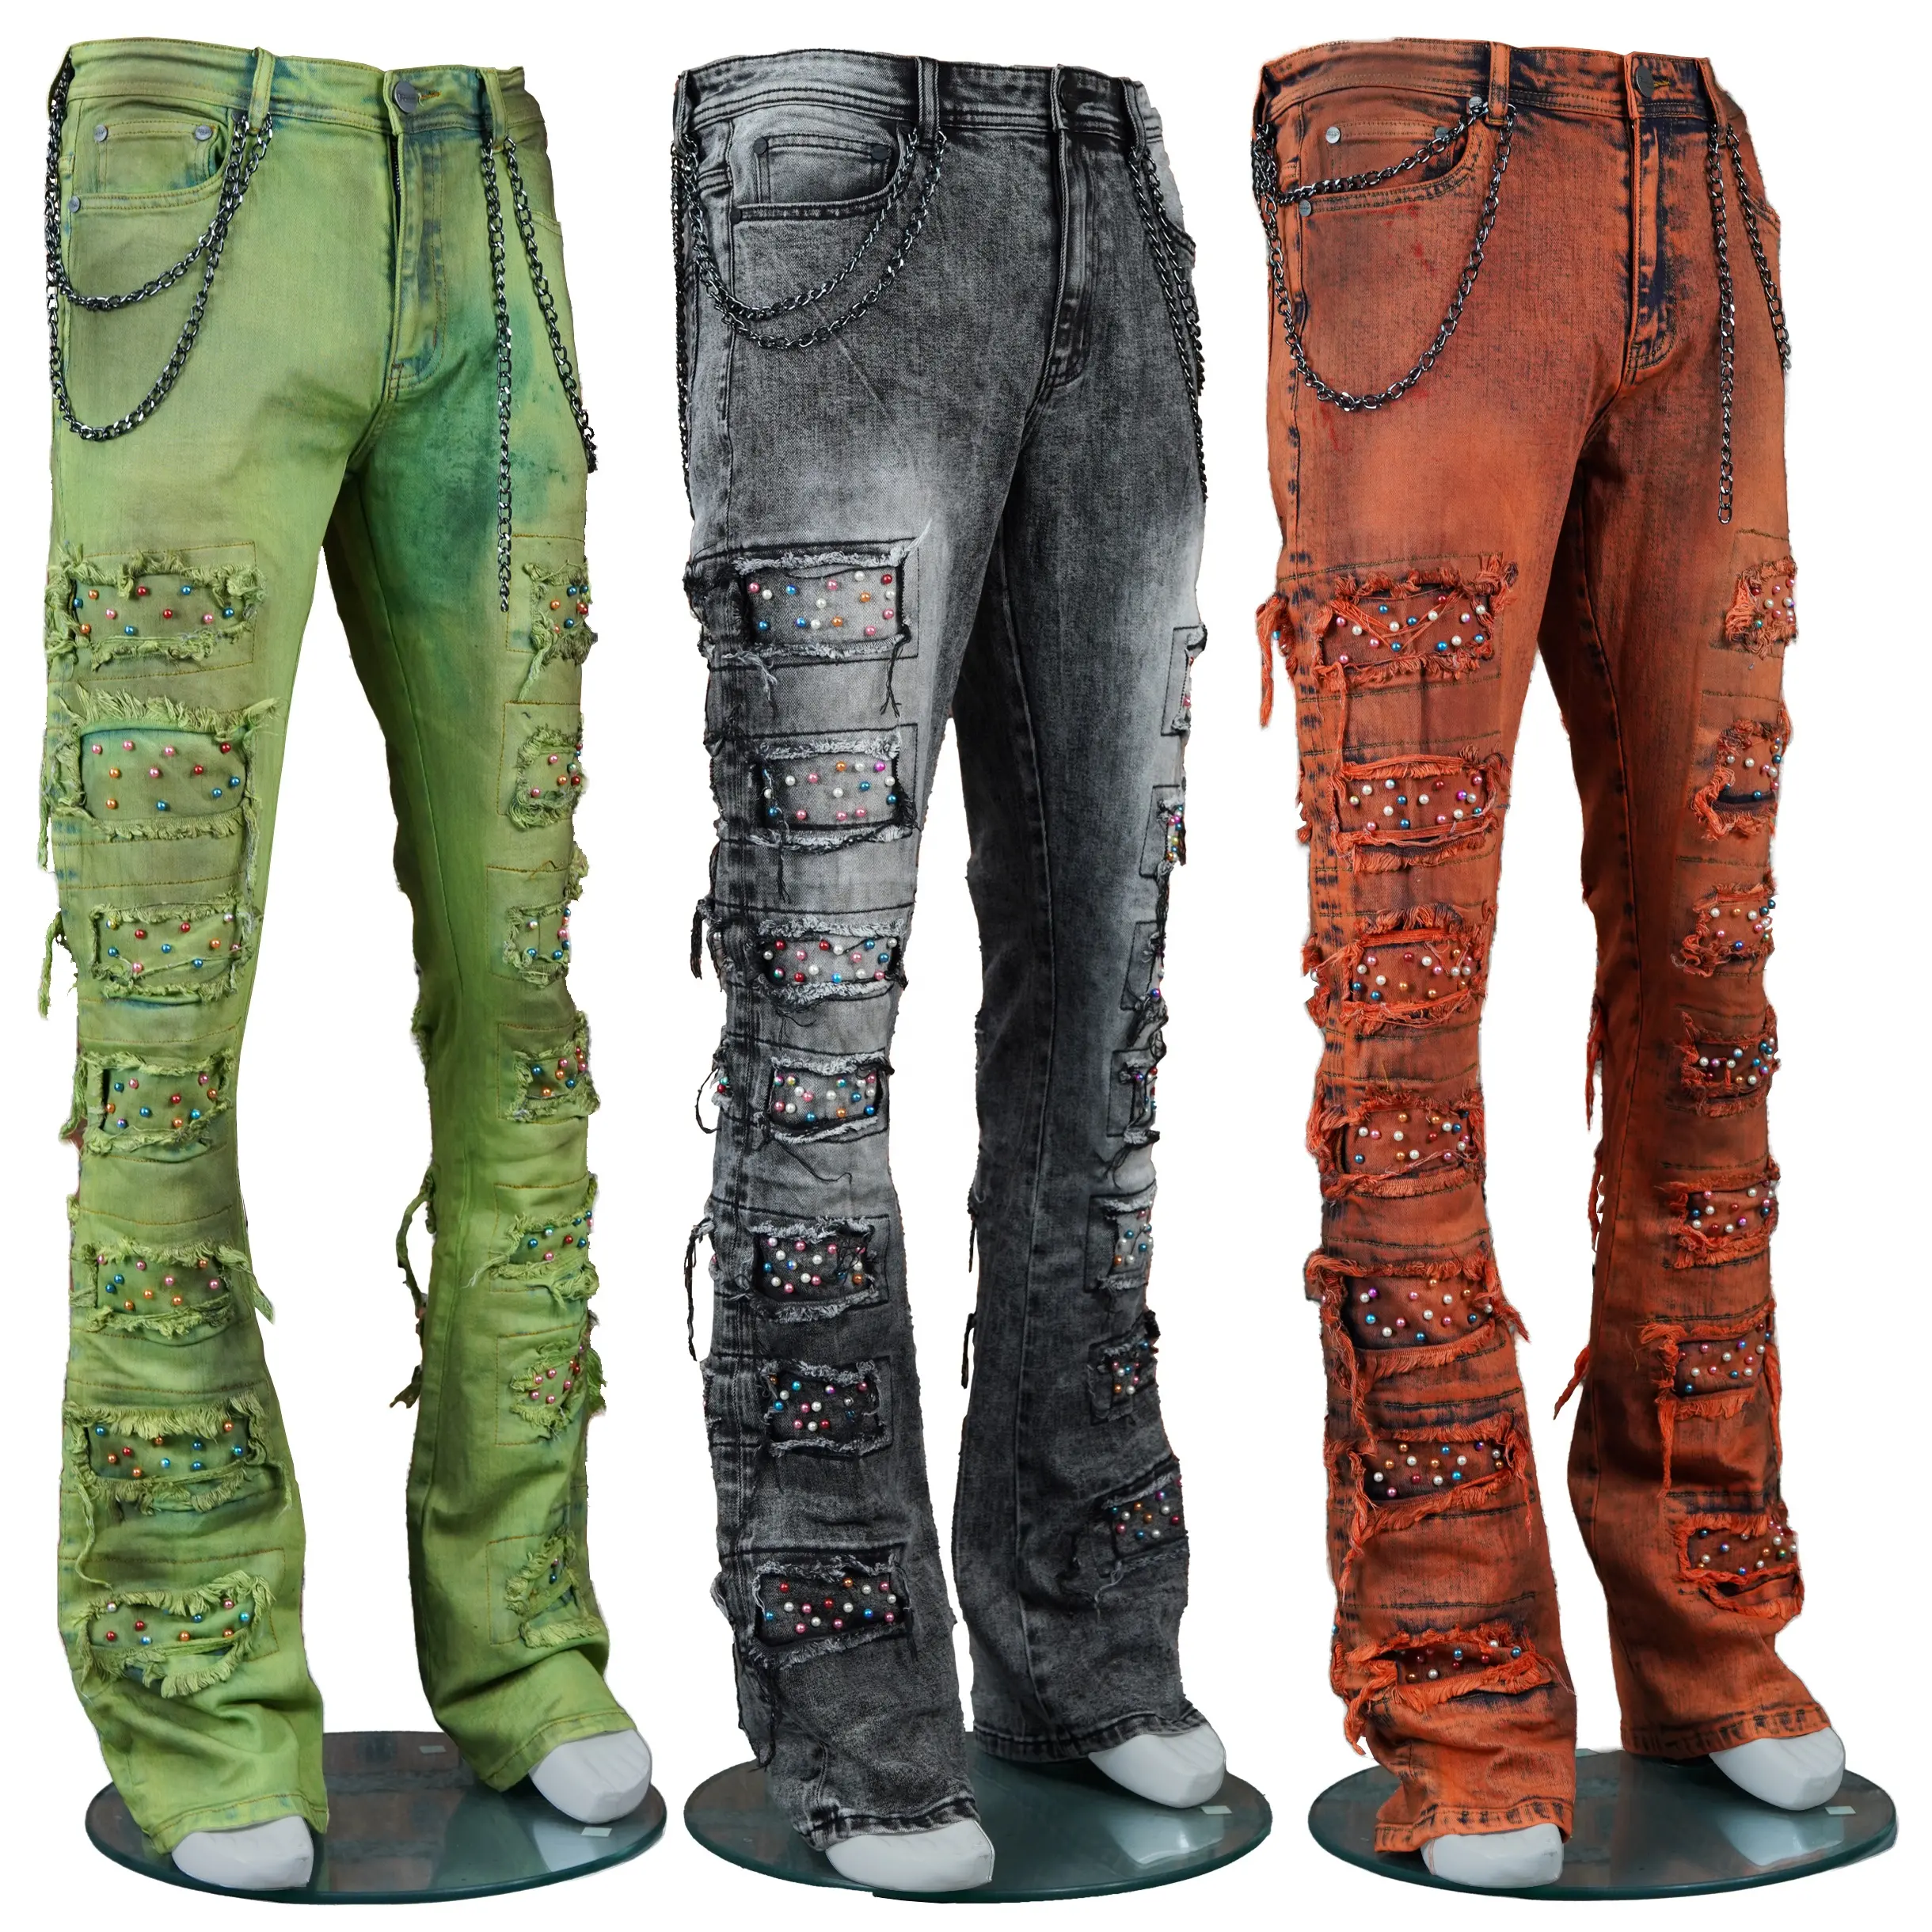 Одежда Wangsheng, популярные брендовые джинсы, размытые разбрызгиватель красок, Стеганные брюки, расклешенные мужские джинсы